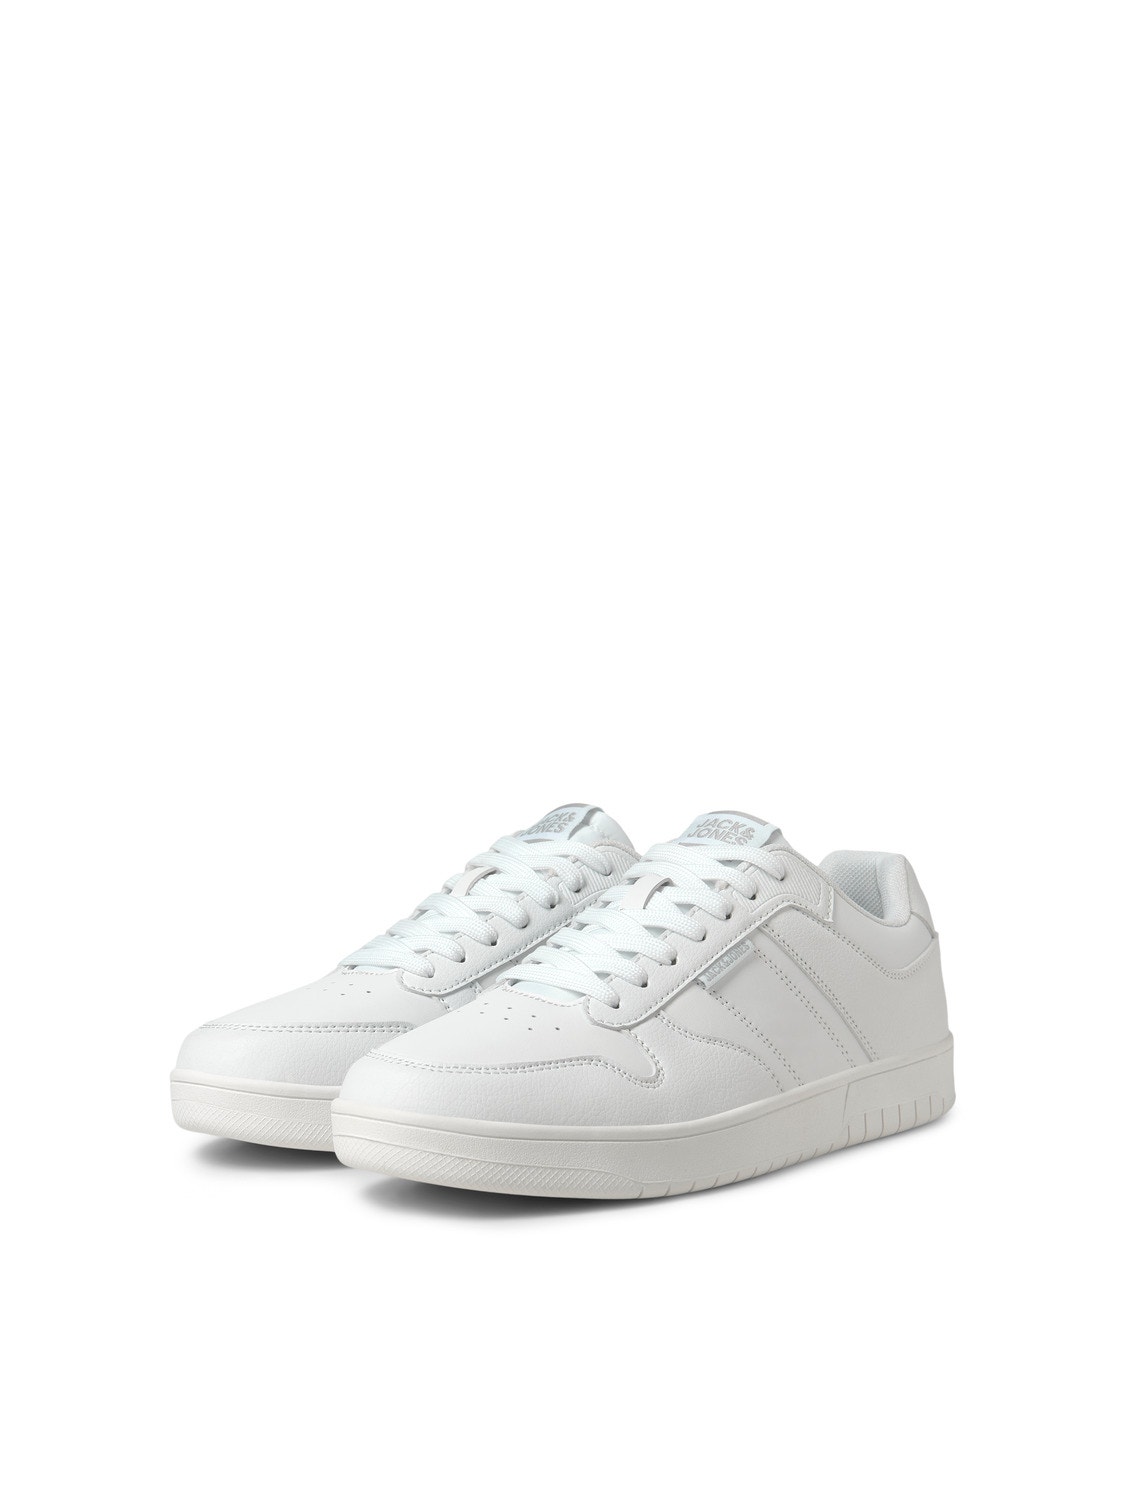 Jack & Jones Polyurethan Sneaker -White - 12203668